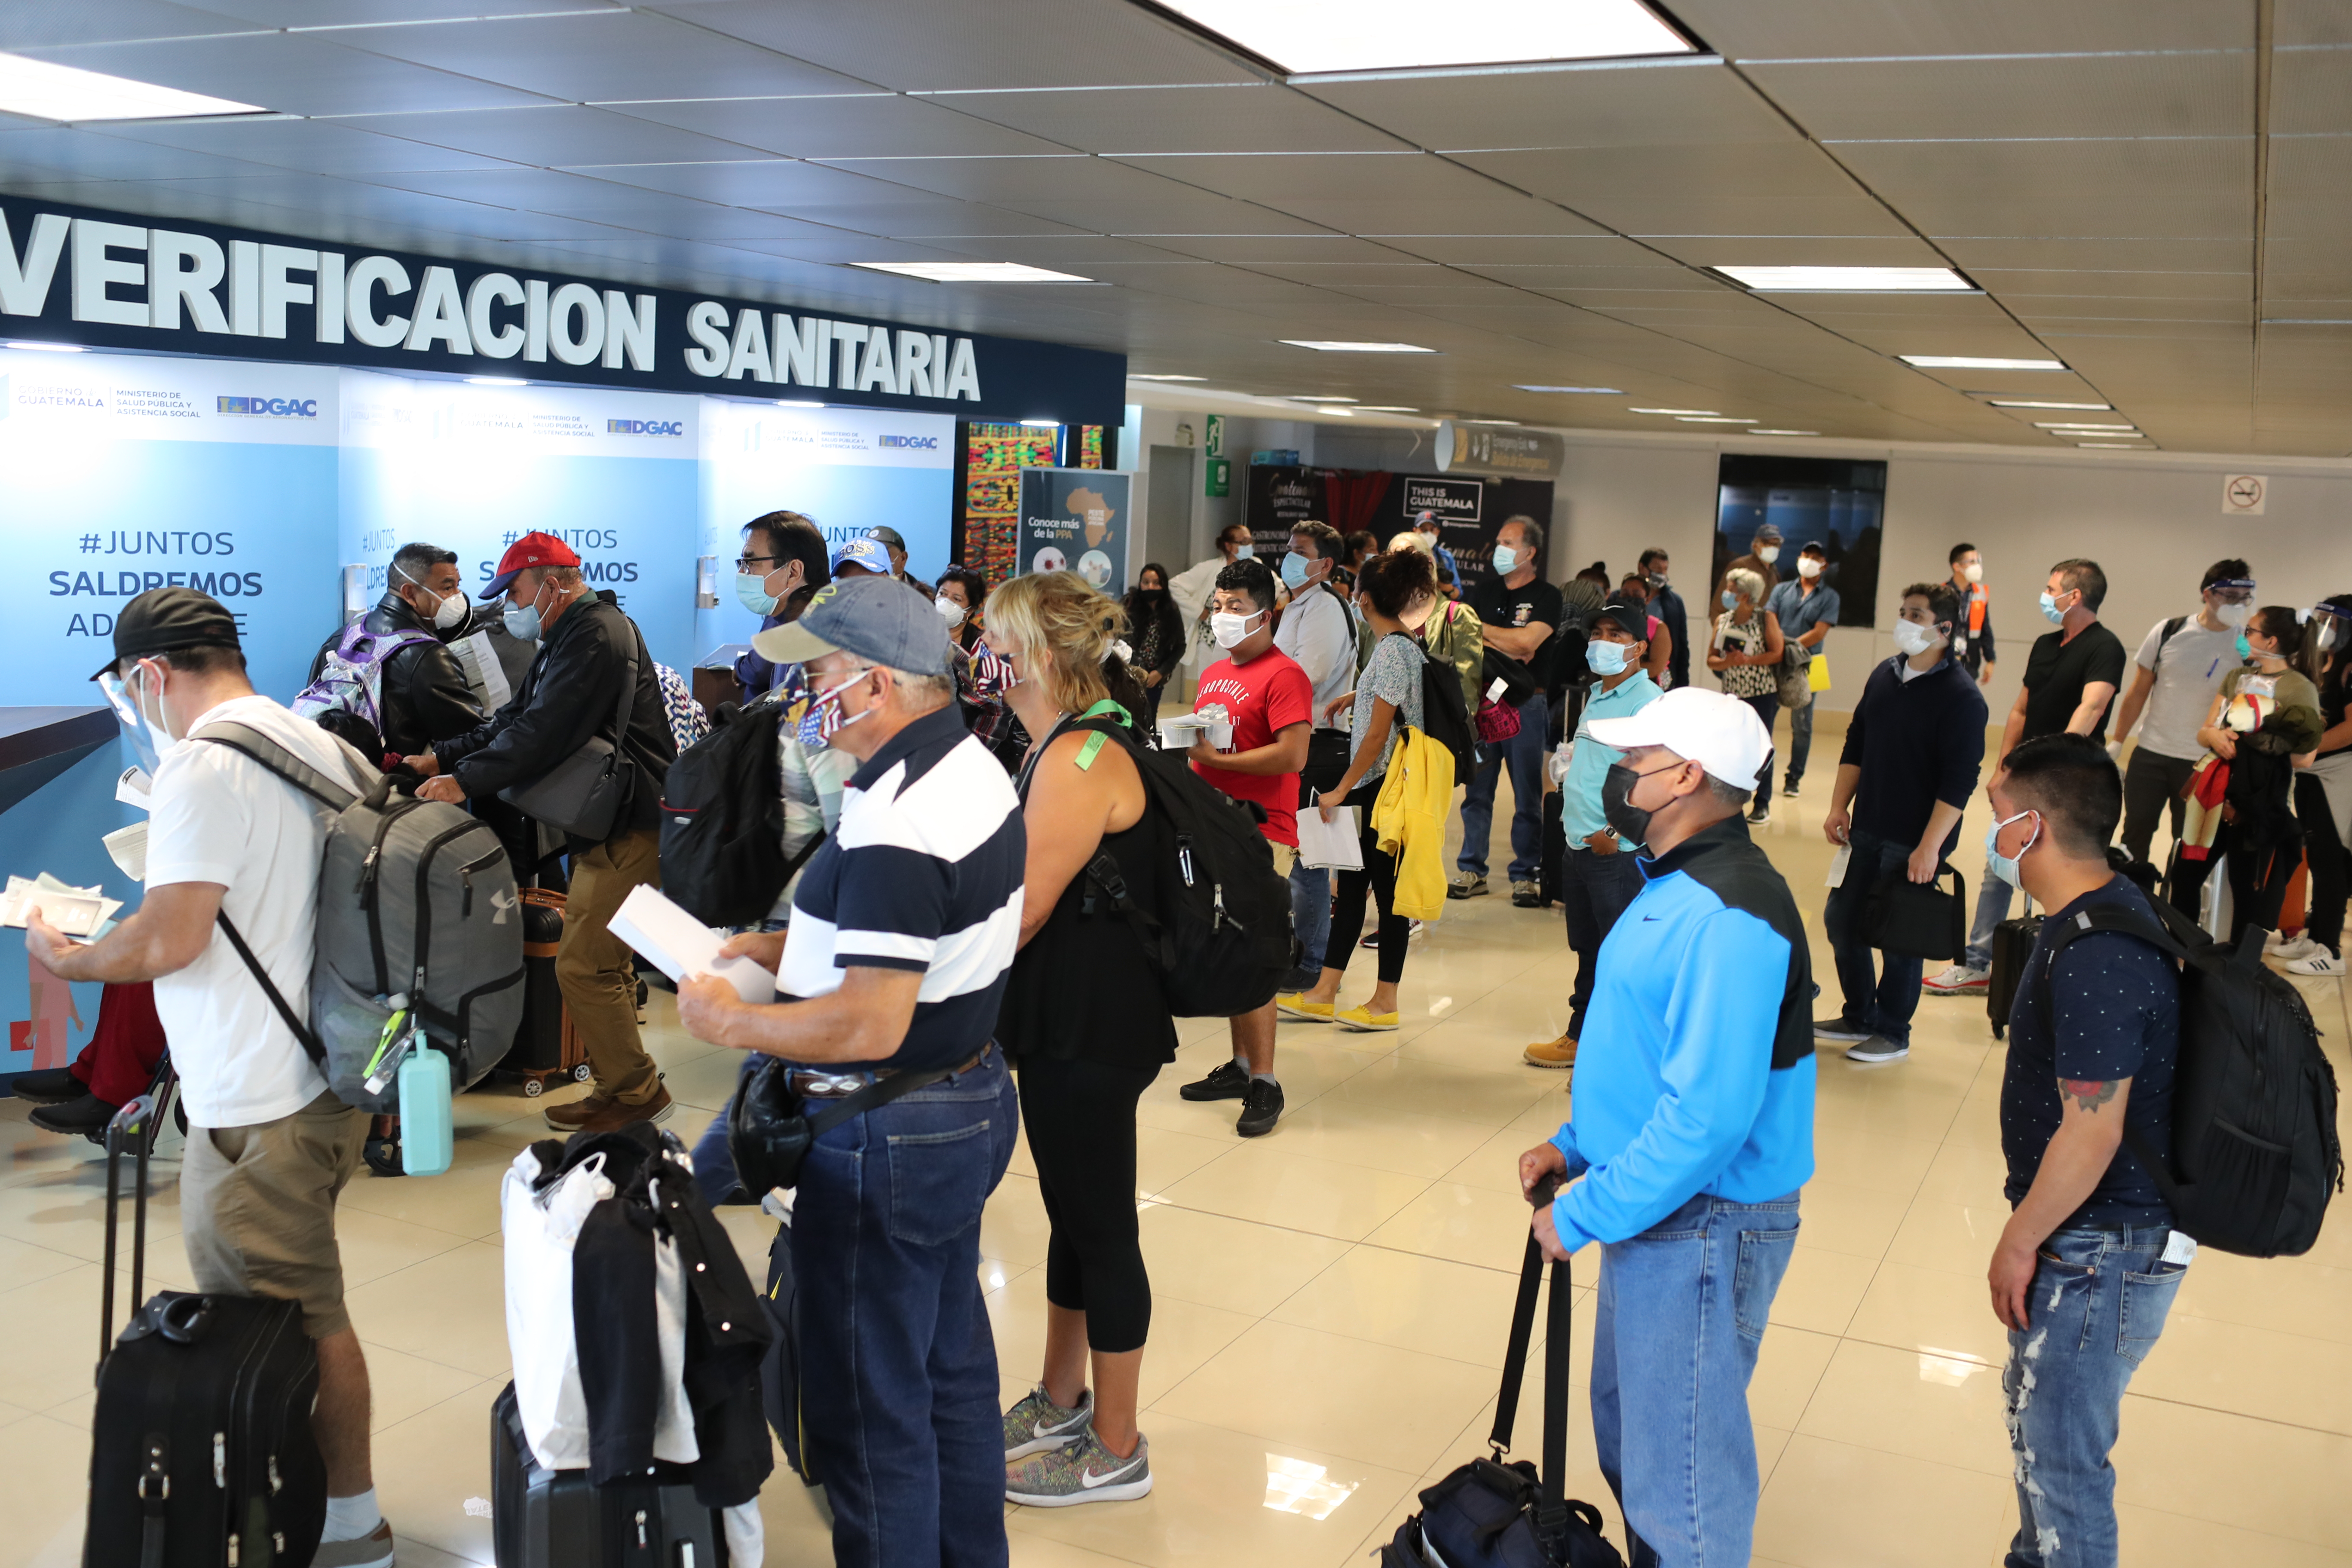 En varias áreas del Aeropuerto La Aurora hubo aglomeraciones y no se pudo guardar la distancia física. (Foto, Prensa Libre: Érick Ávila).